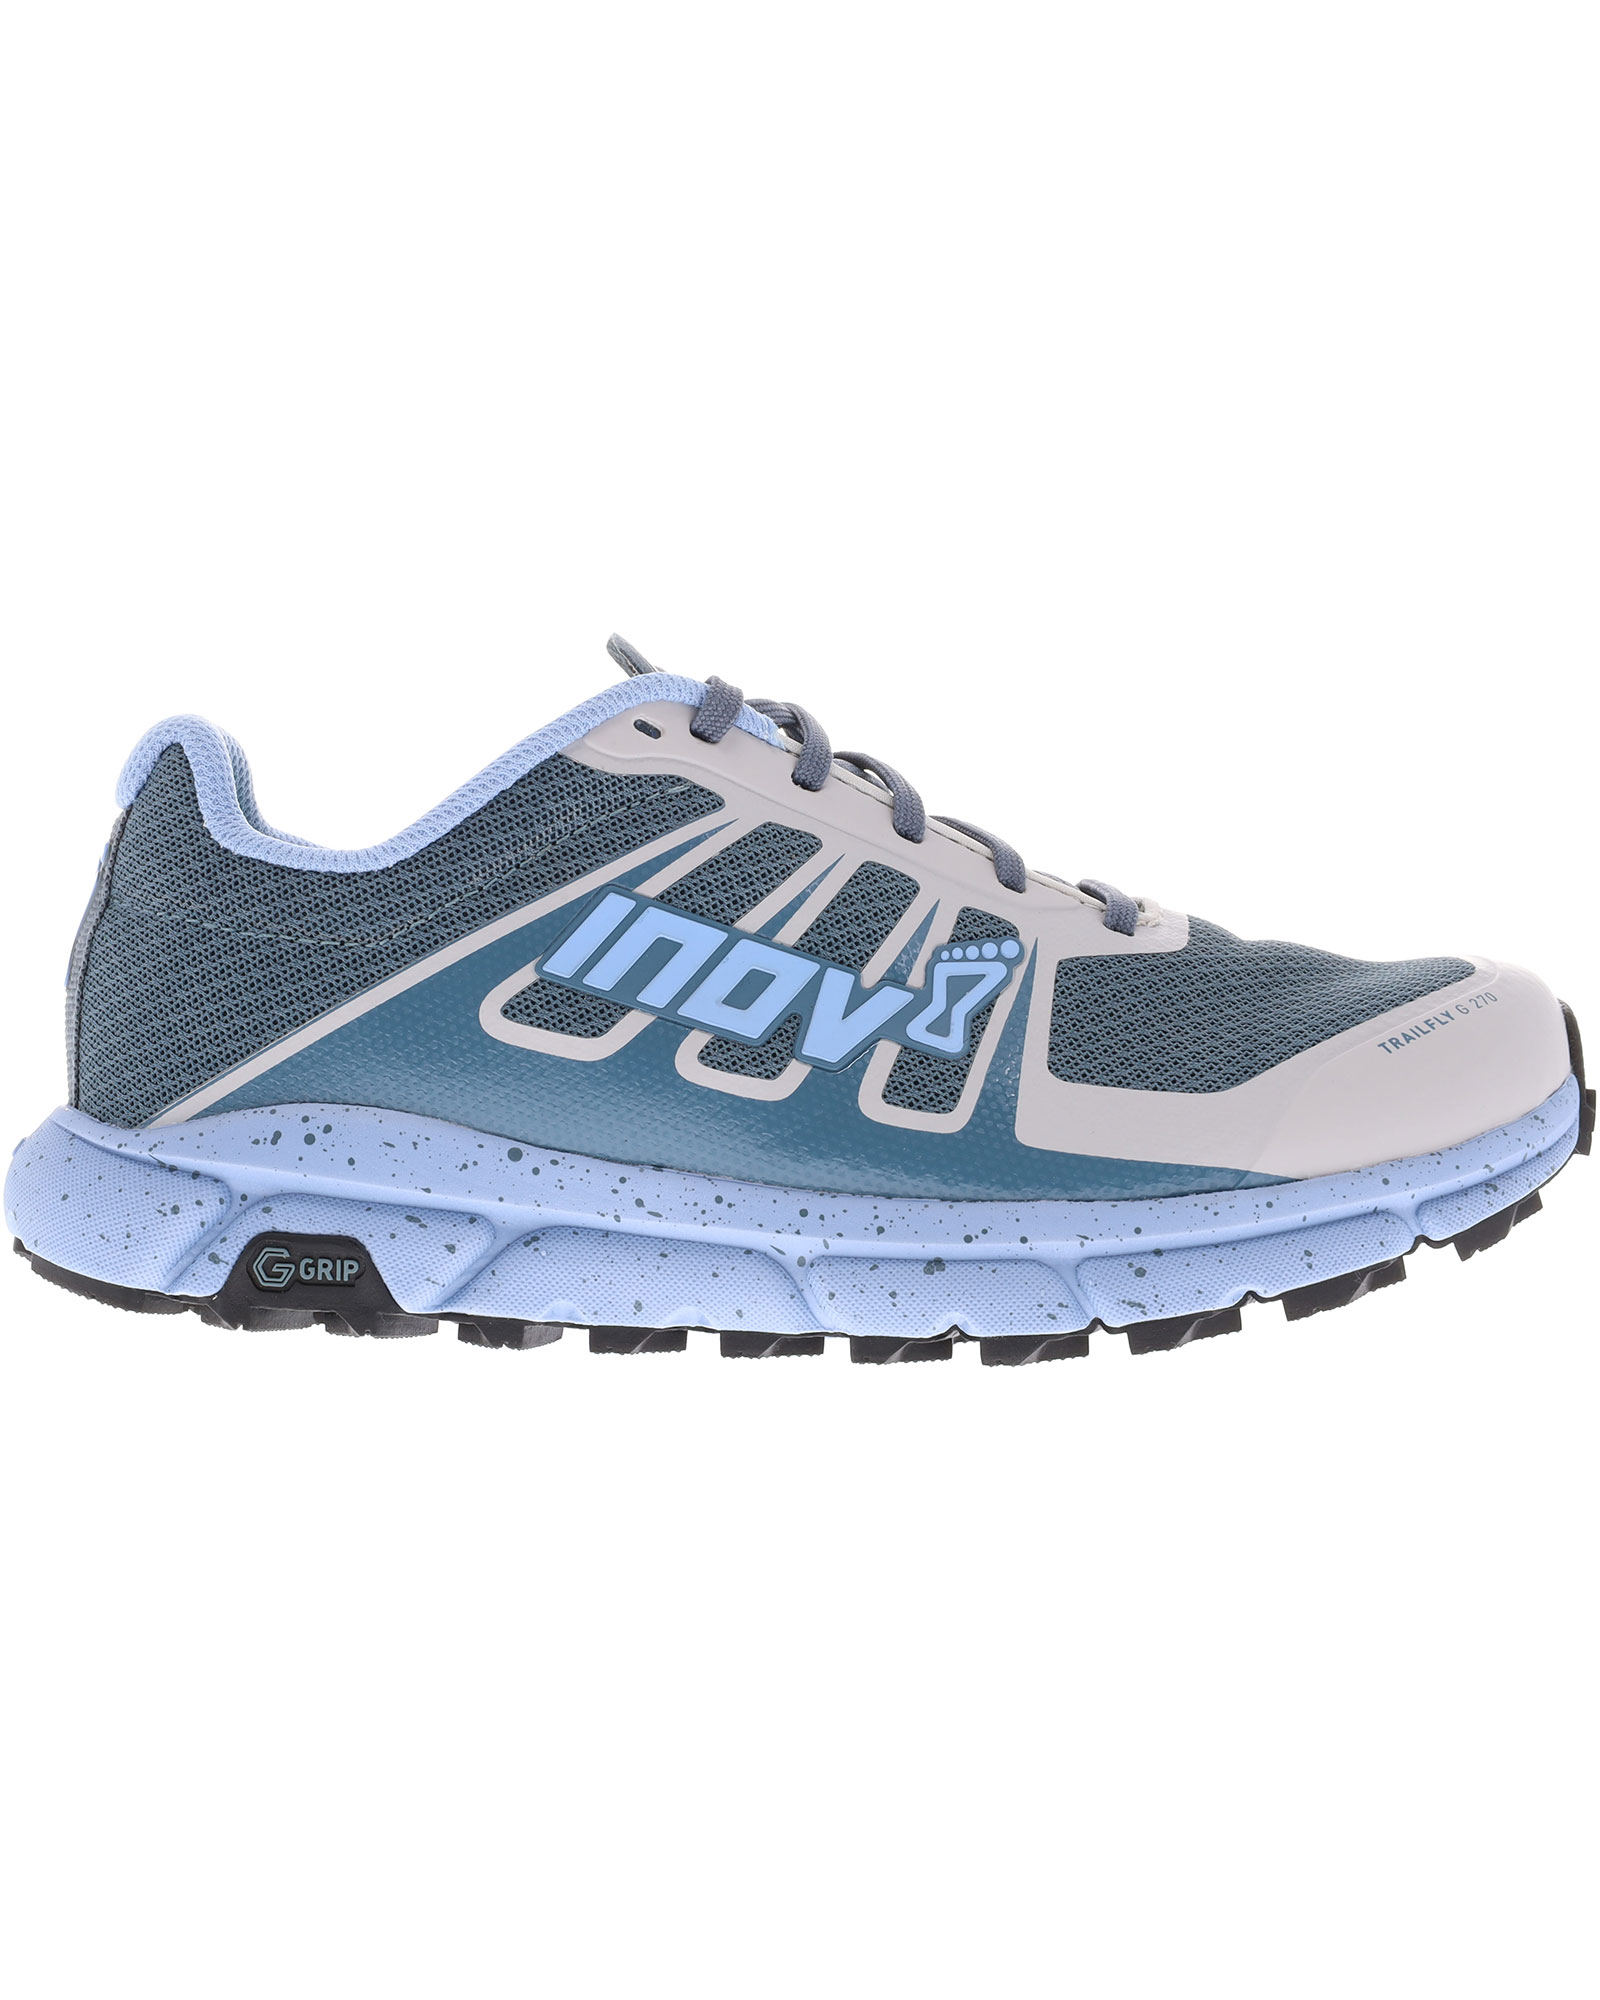 Inov 8 TrailFly G 270 V2 Women’s Trail Shoes - Blue/Grey UK 7